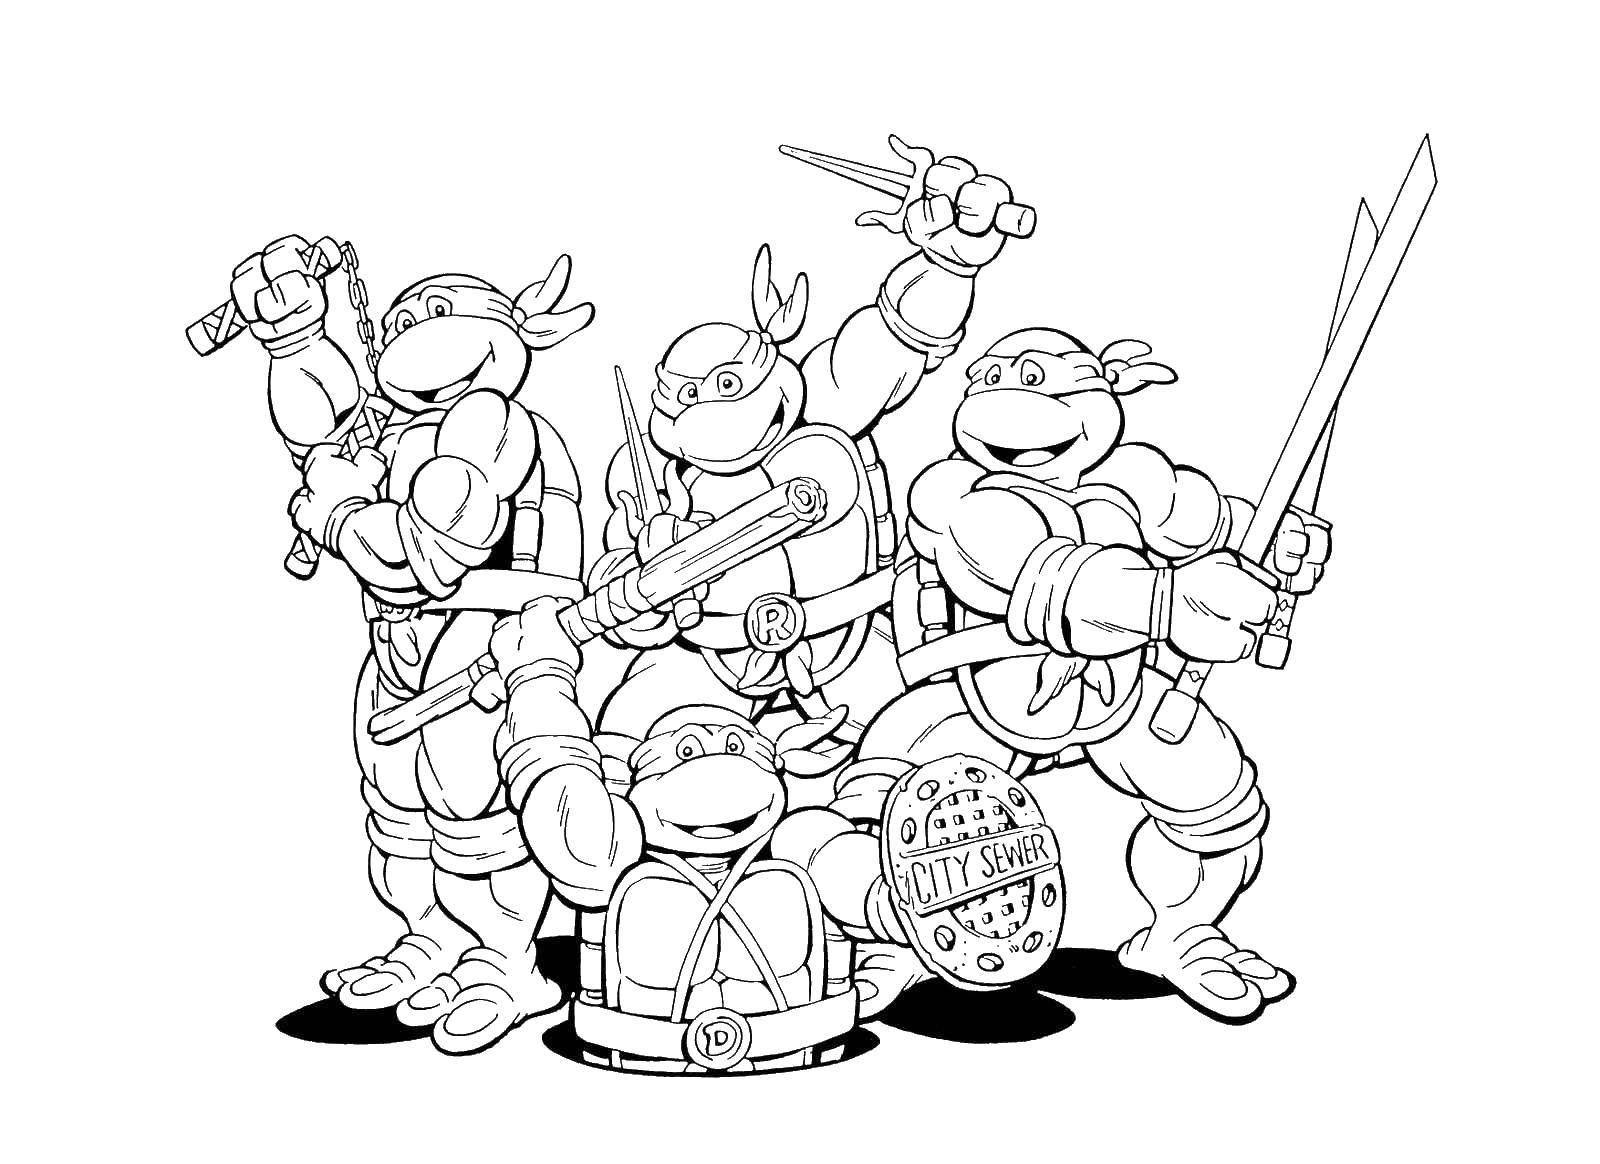 Coloring Ninja turtles. Category ninja . Tags:  turtles, ninjas, masks.